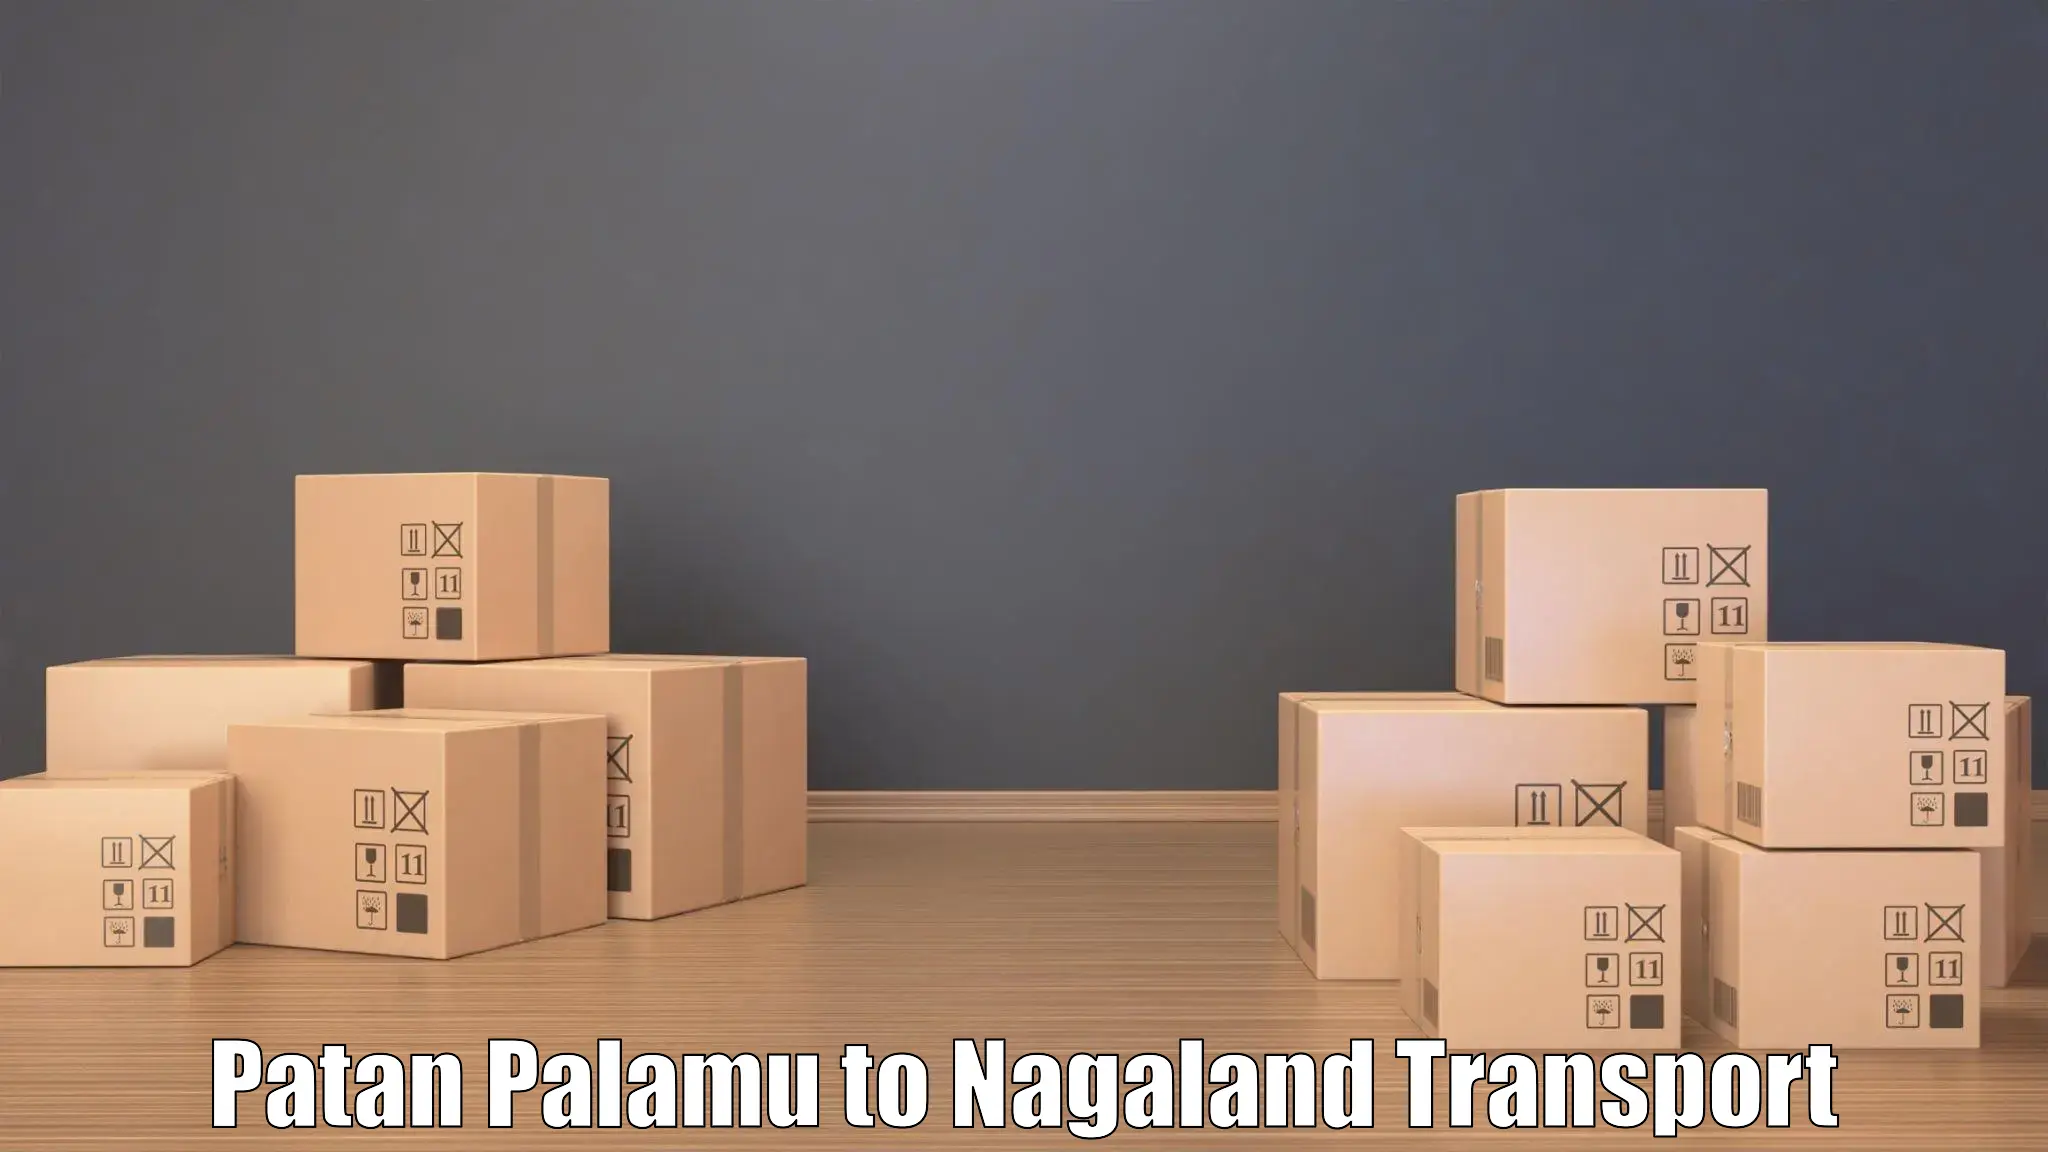 Online transport booking Patan Palamu to Dimapur